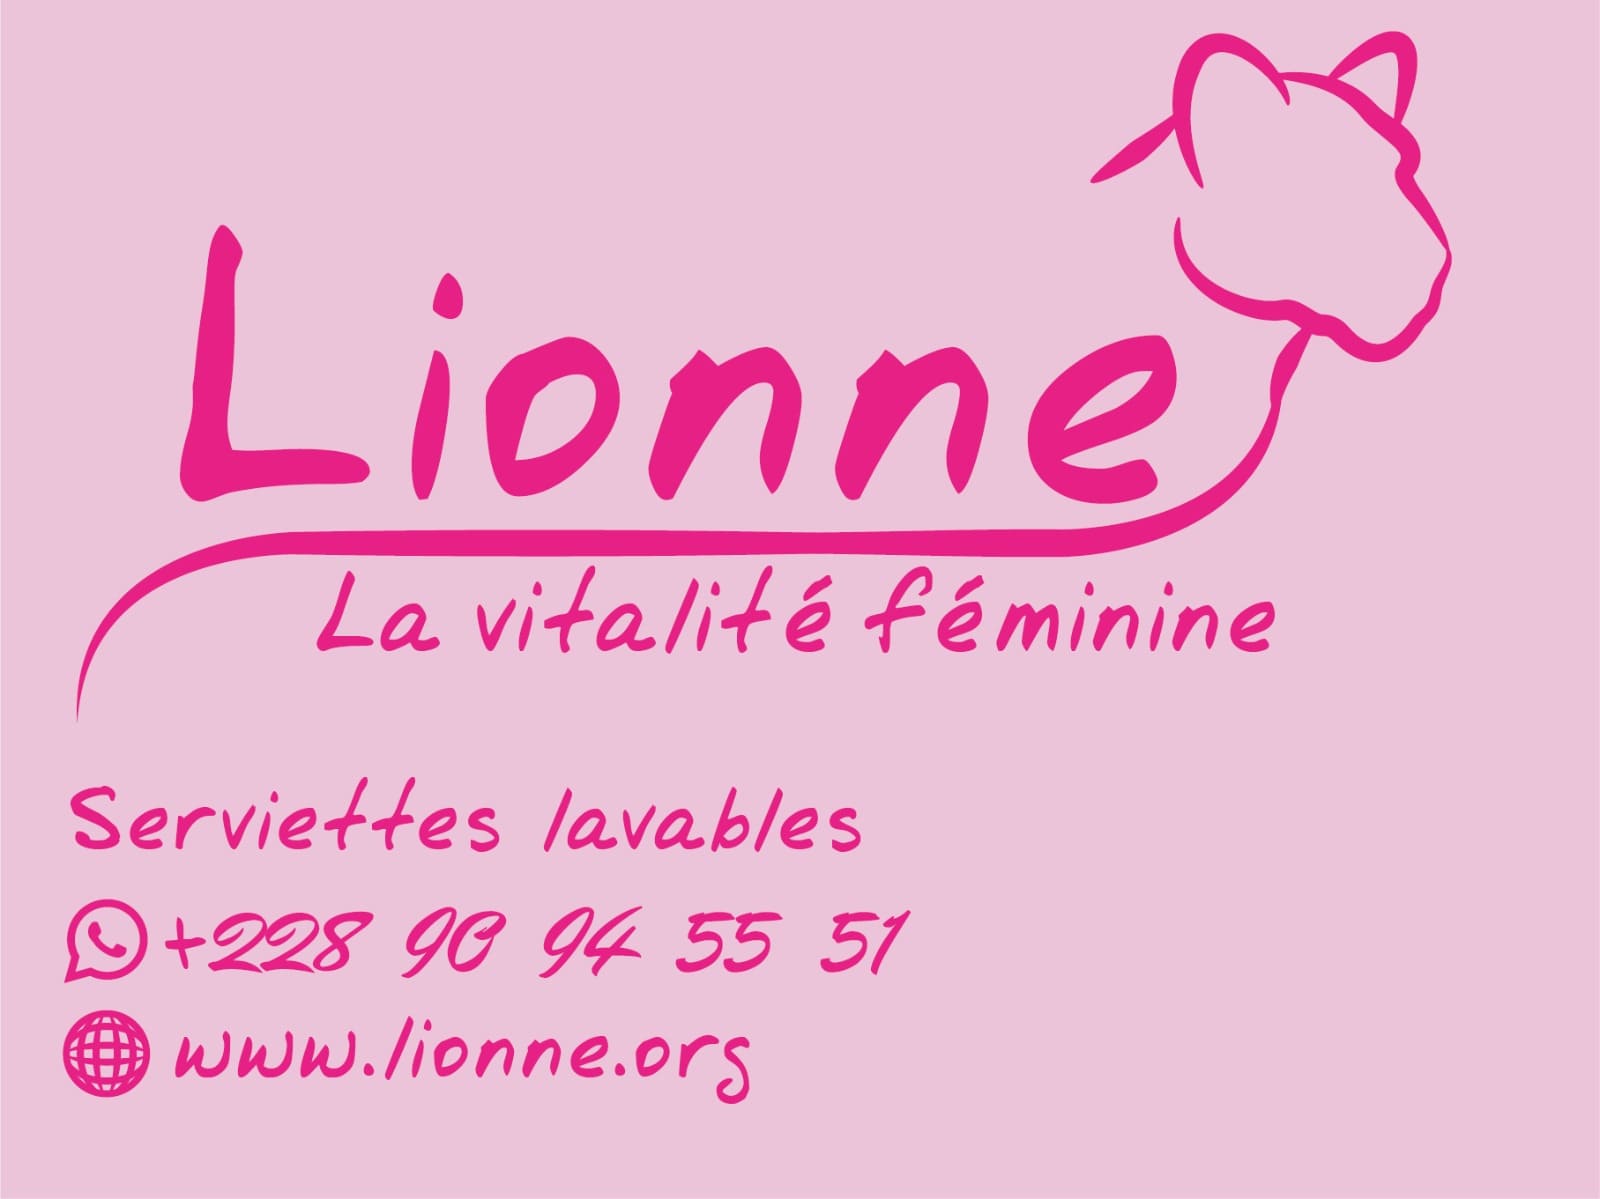 Neue Lionne Website